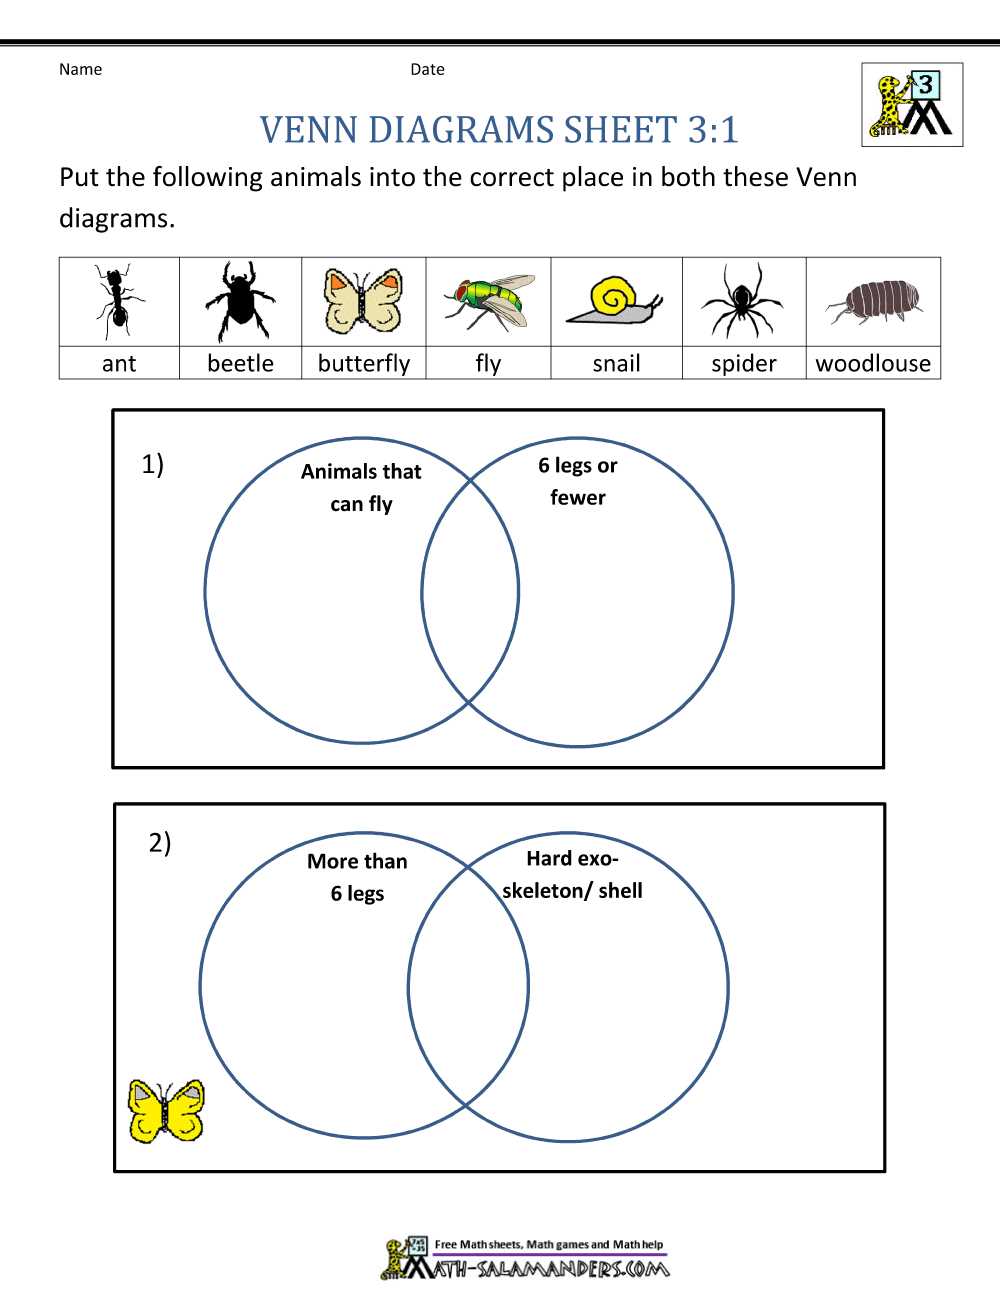 Venn diagram examples pdf